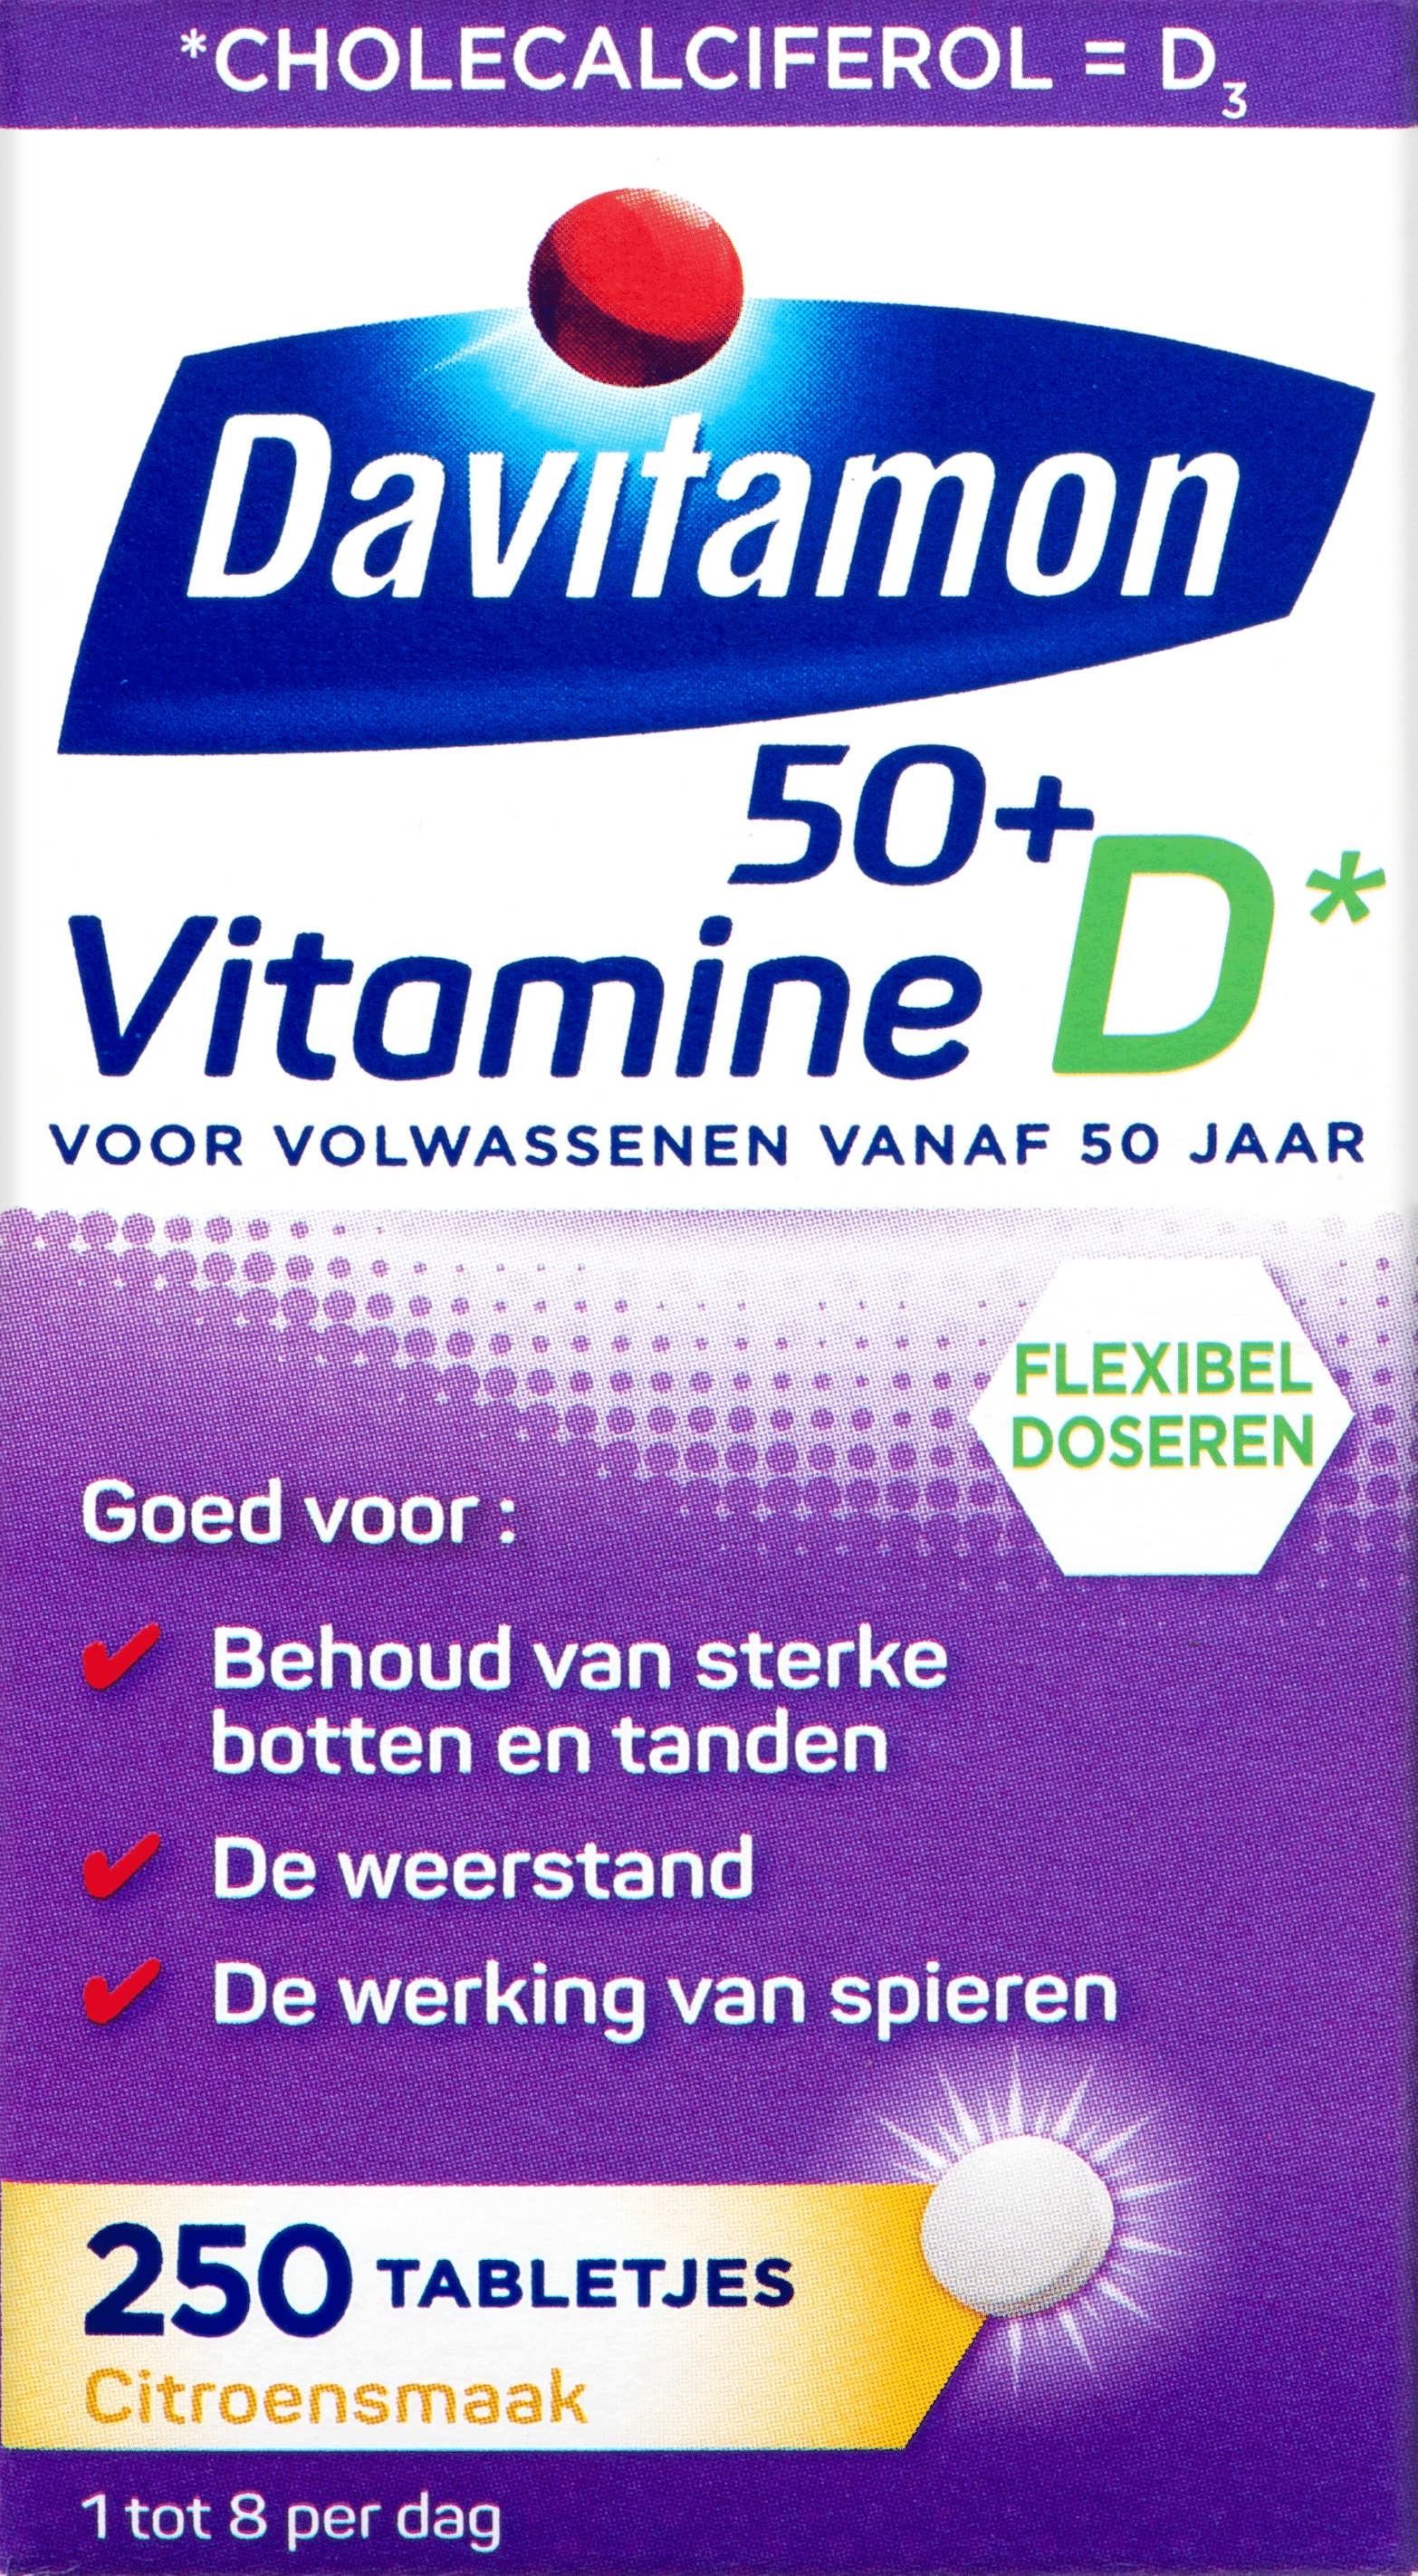 Chemicus Fascineren smeren Davitamon Vitamine D 50+: voor behoud van sterke botten